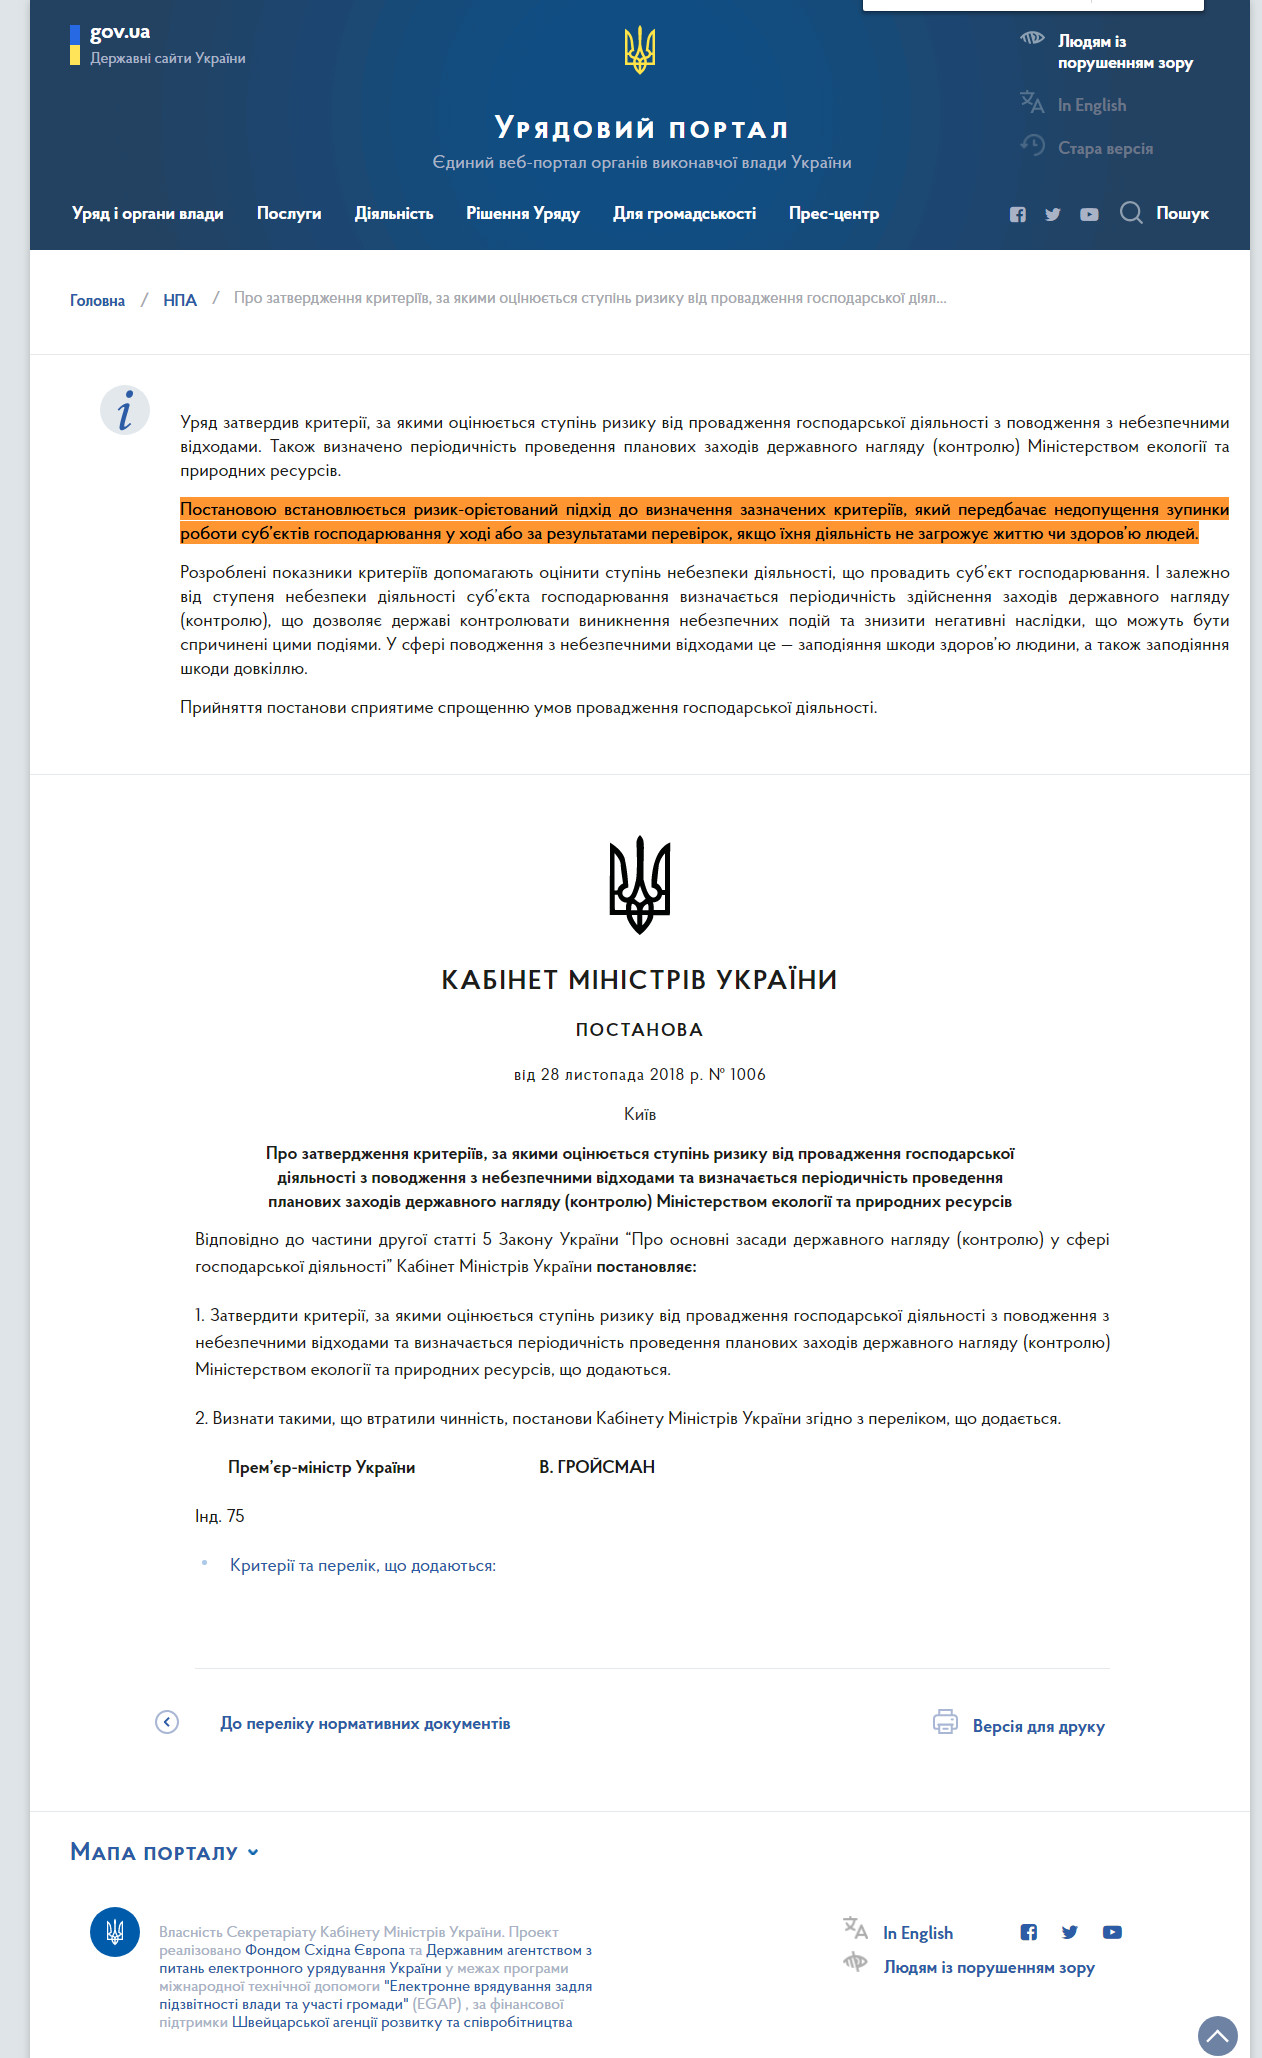 https://www.kmu.gov.ua/ua/npas/pronnya-z-nebezpechnimi-vidhodami-ta-viznachayetsya-periodichnist-provedennya-planovih-zahodiv-derzhavnogo-naglyadu-kontrolyu-ministerstvom-ekologiyi-ta-prirodnih-resursiv